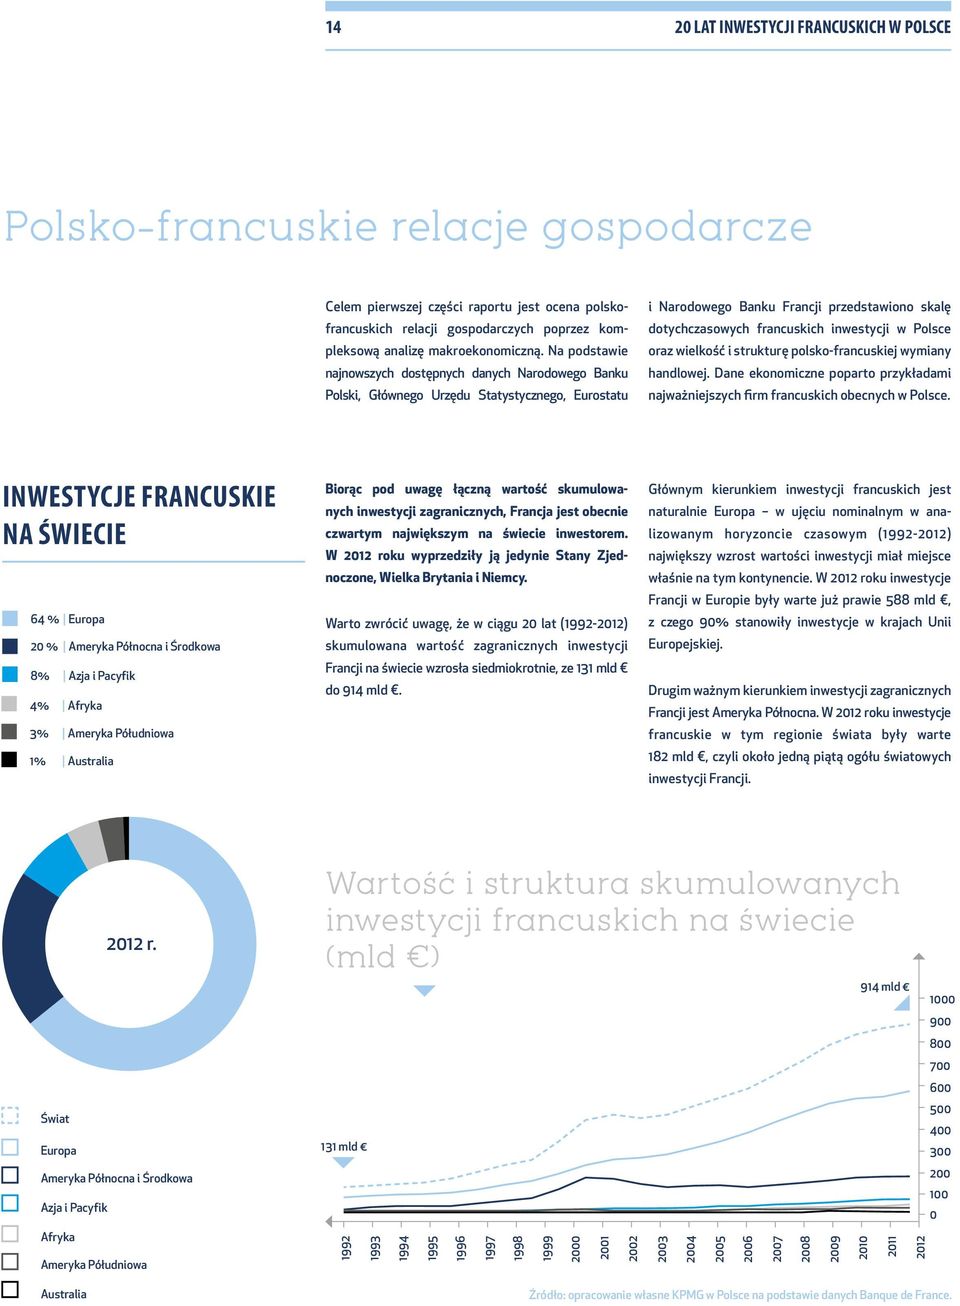 Na podstawie najnowszych dostępnych danych Narodowego Banku Polski, Głównego Urzędu Statystycznego, Eurostatu i Narodowego Banku Francji przedstawiono skalę dotychczasowych francuskich inwestycji w